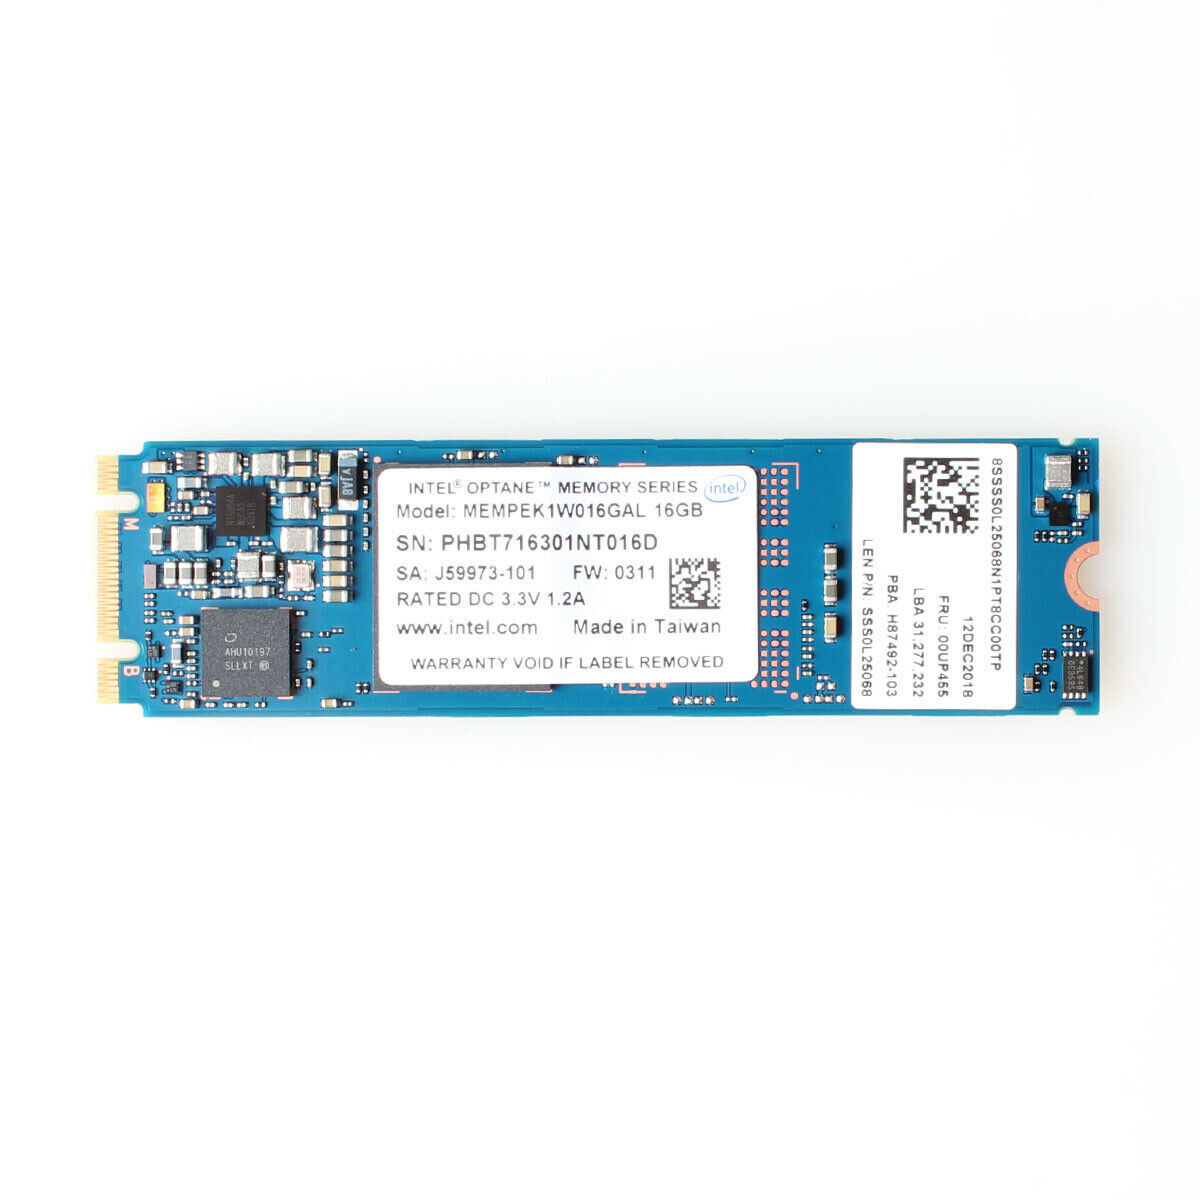 Intel Optane Memory 64 GB / 32 GB / 16 GB SSD M.2 2280 PCIe 3.0 3D Xpoint NVMe